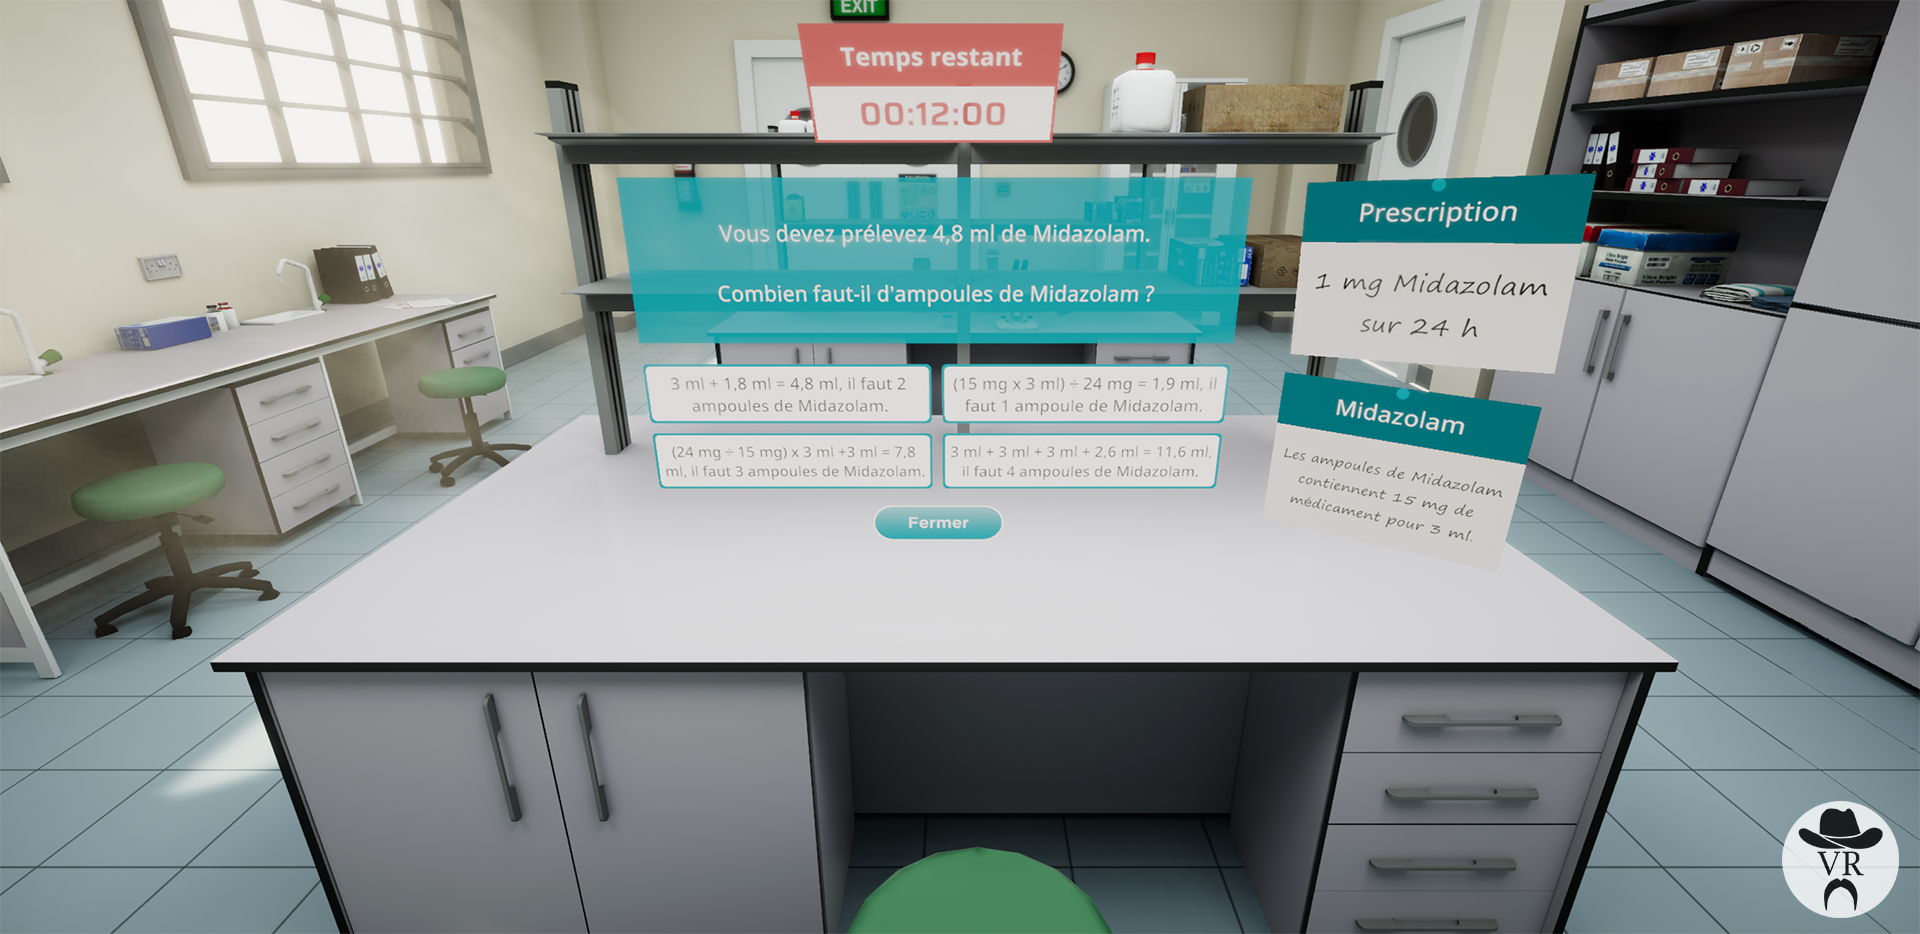 Projet Formation Vigilance réalité virtuelle Hôpitaux Robert Schuman